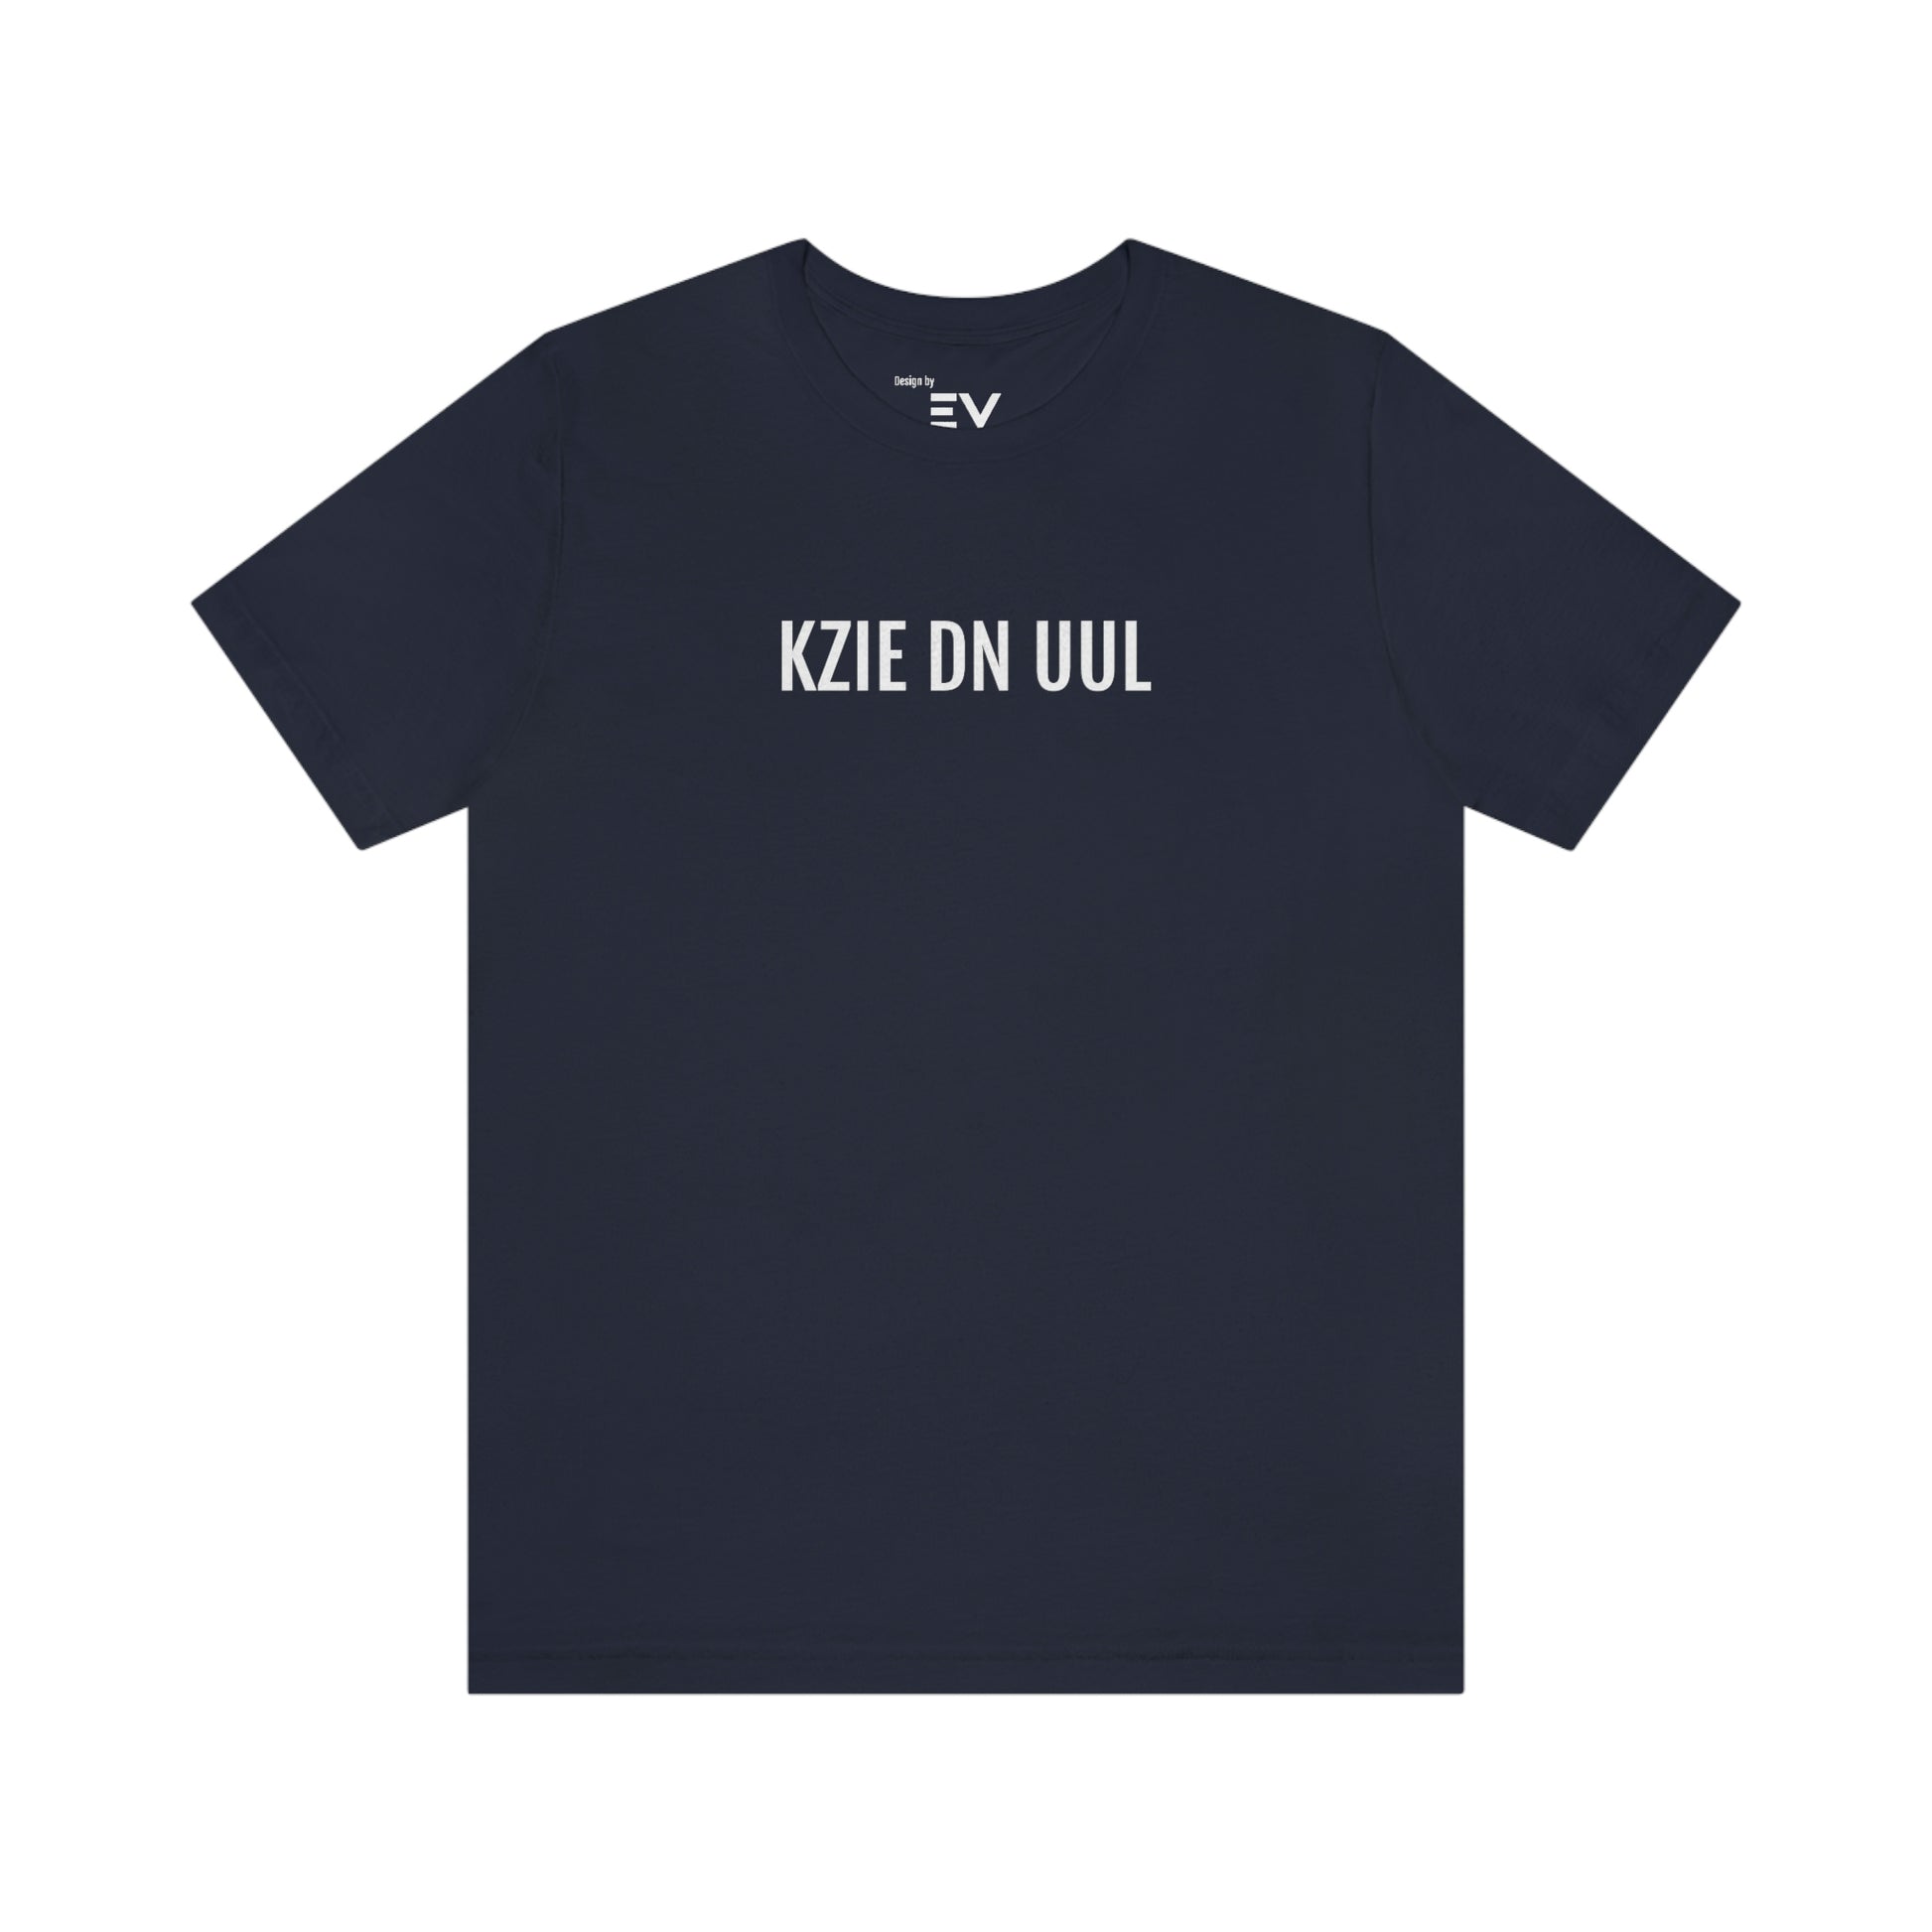 Ksie dn uul | Unisex T-Shirt uit West-Vlaanderen - Marine blauw